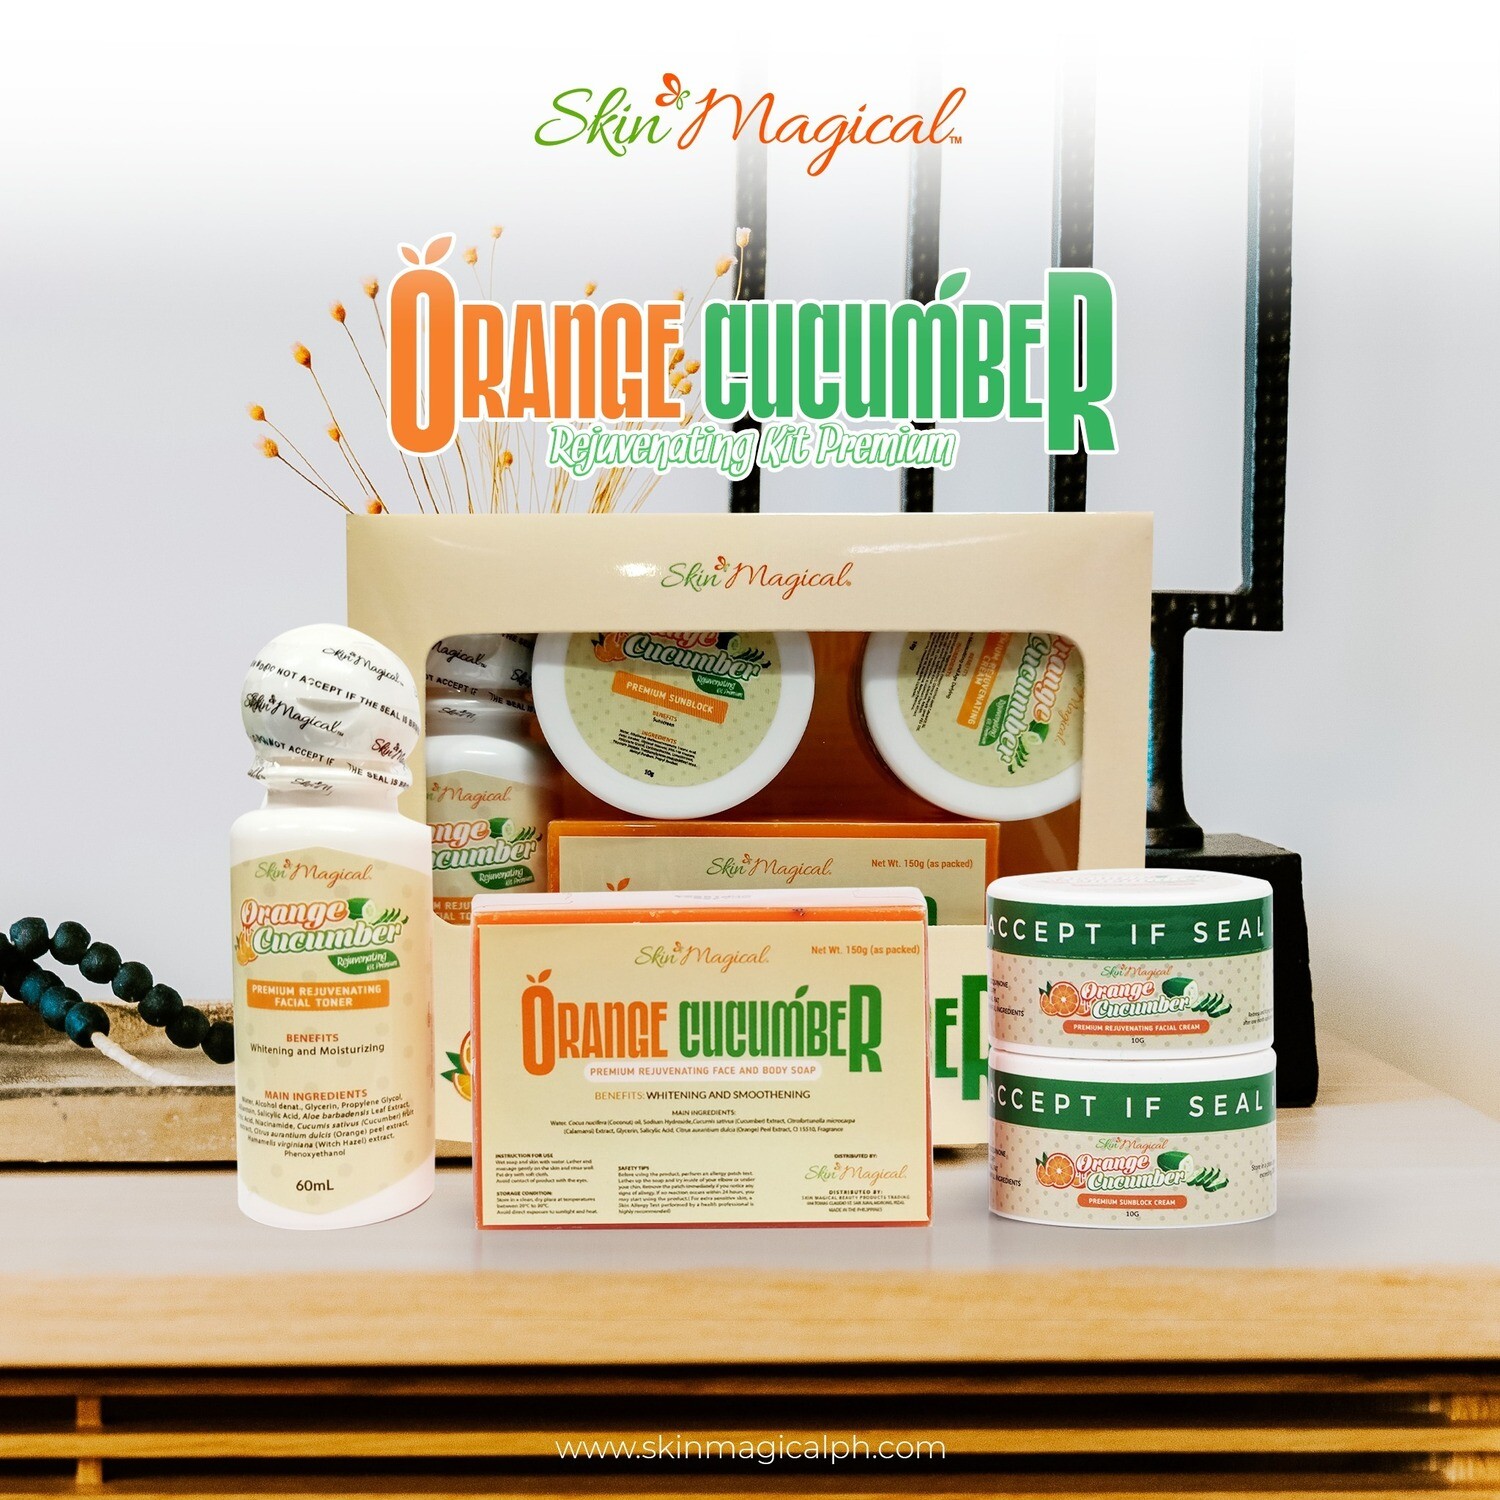 Skin Magical Orange Cucumber Rejuvenating Premium Set